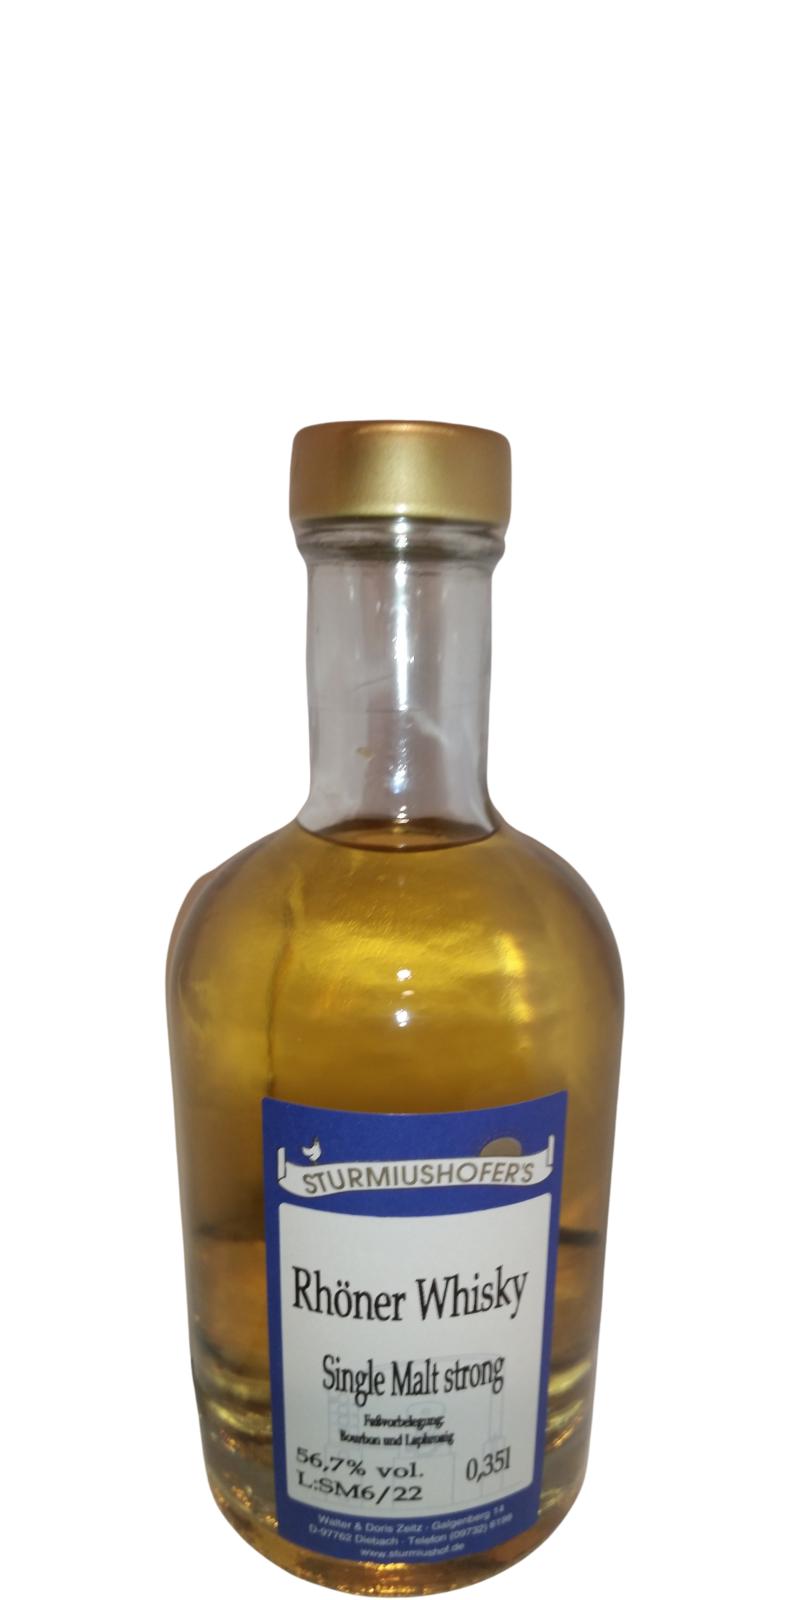 Rhoner Whisky Single Malt strong Bourbon & Laphroaig 56.7% 350ml